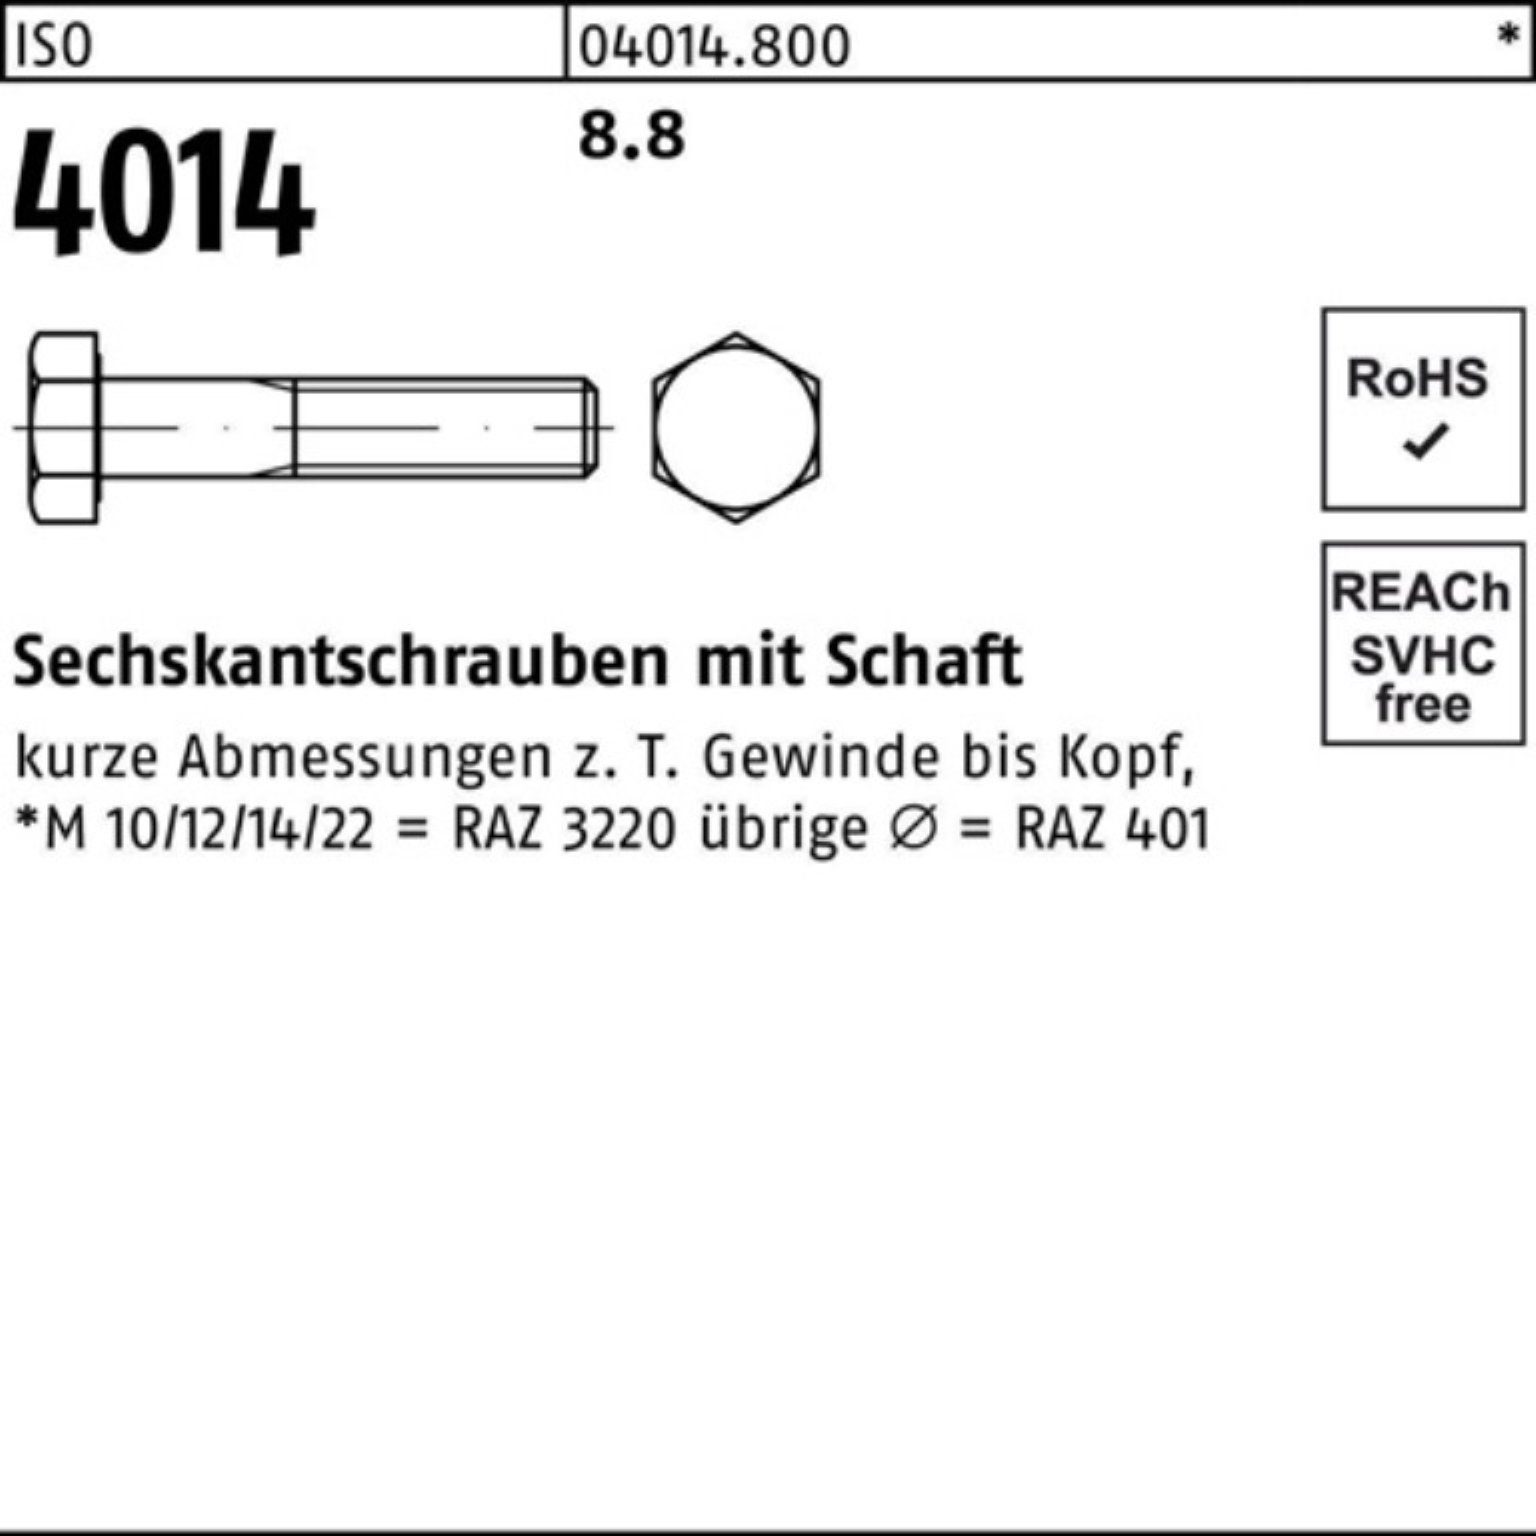 Schaft Sechskantschraube ISO Bufab Stück Sechskantschraube ISO 8.8 140 1 100er 4014 M39x Pack